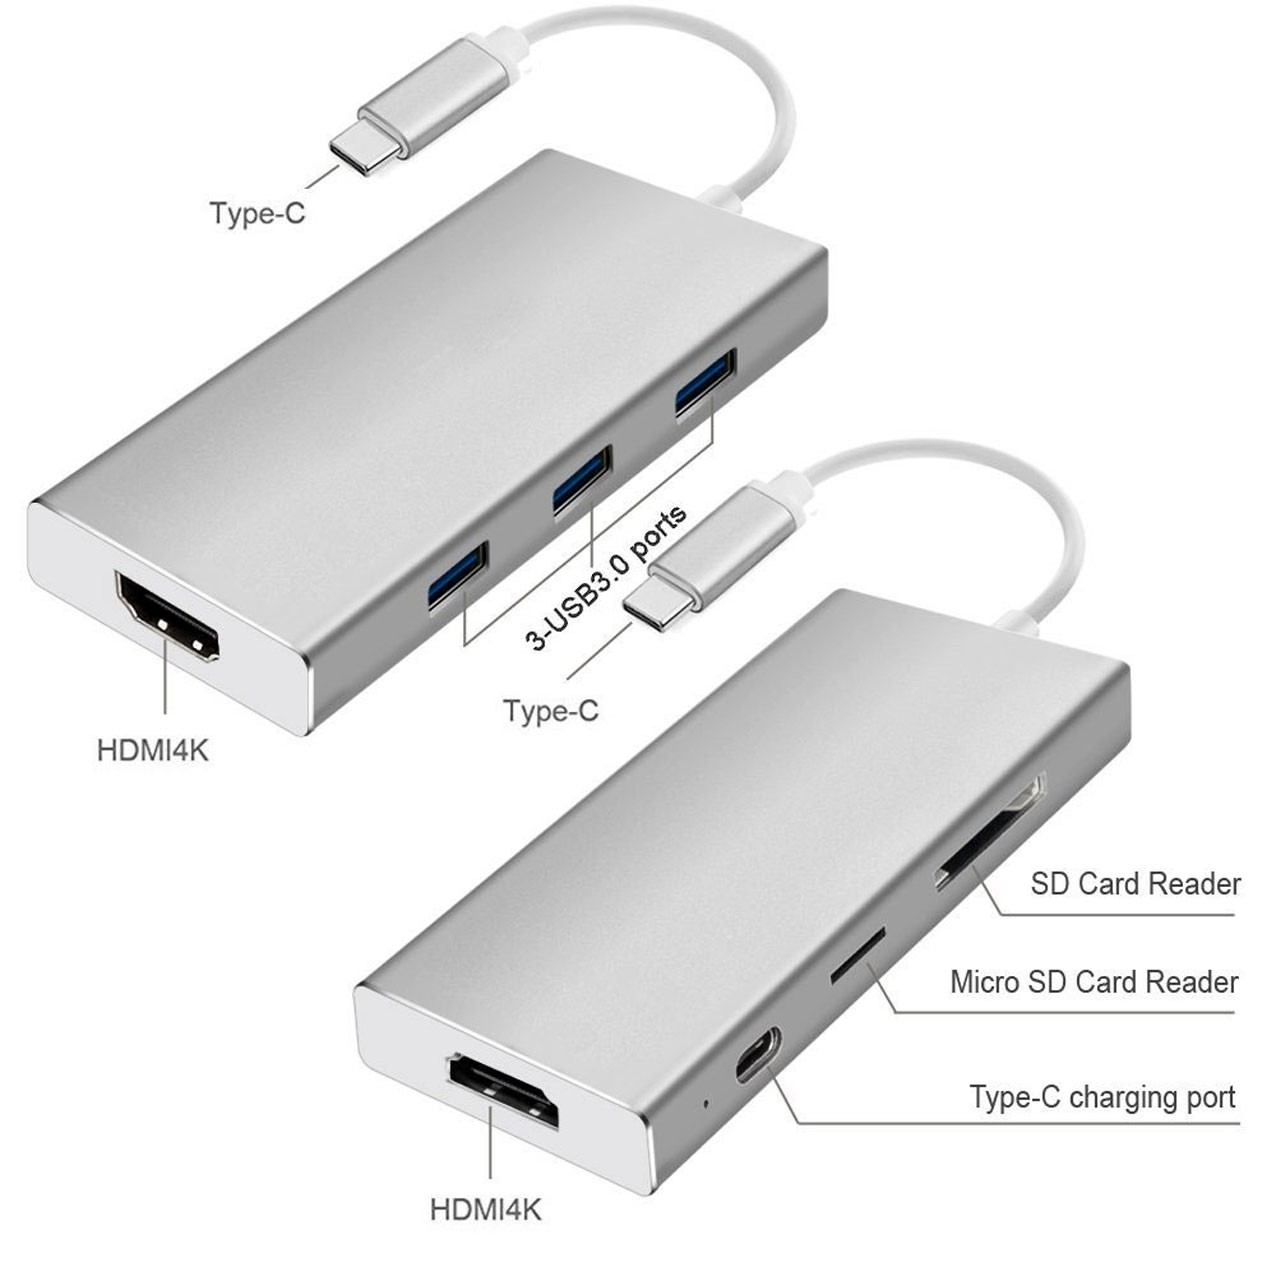 تبدیل Type-c به HDMI 4K به همراه USB 3.0 و رم ریدر